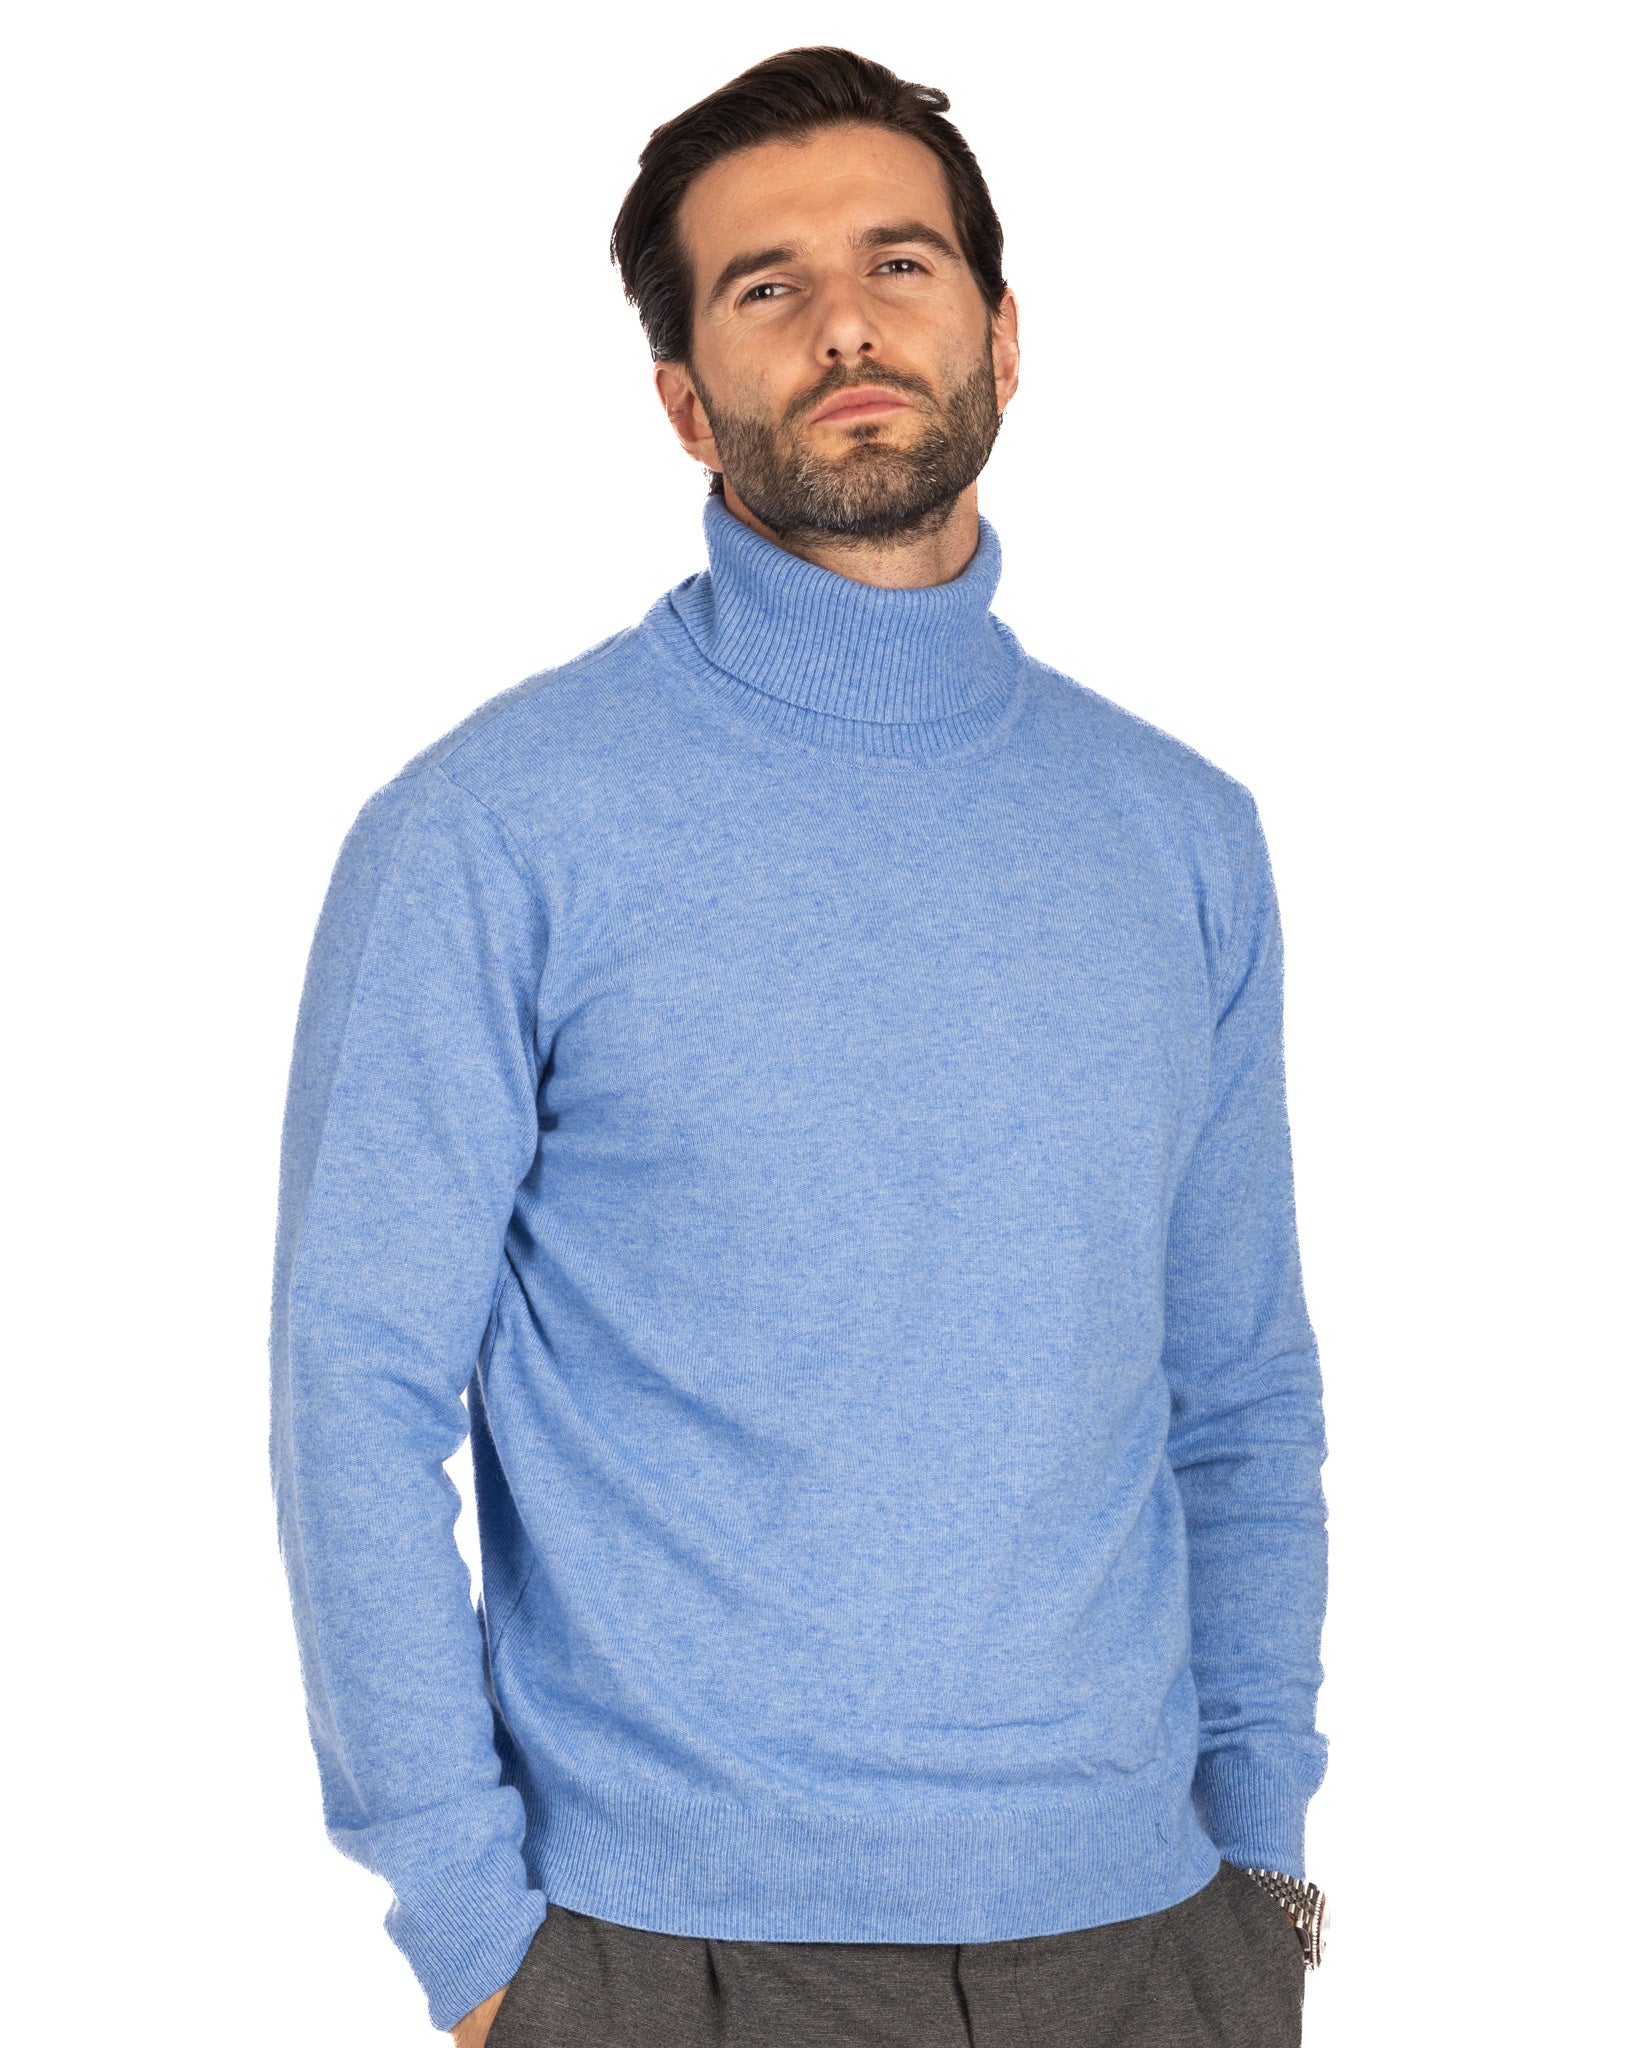 Lee - light blue cashmere blend turtleneck